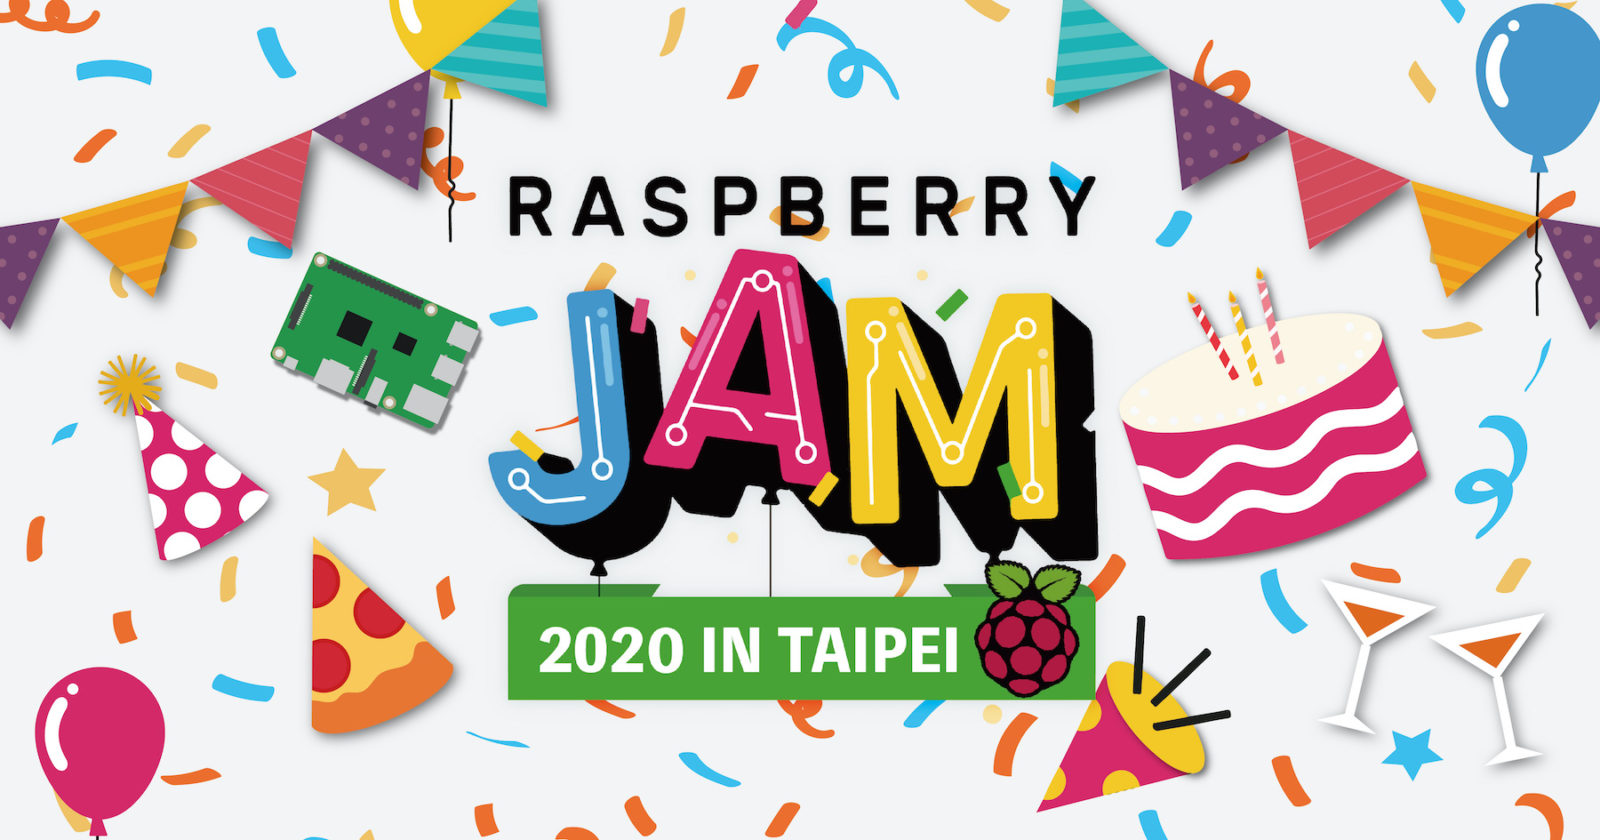 Raspberry Pi Jam in Taipei 2020